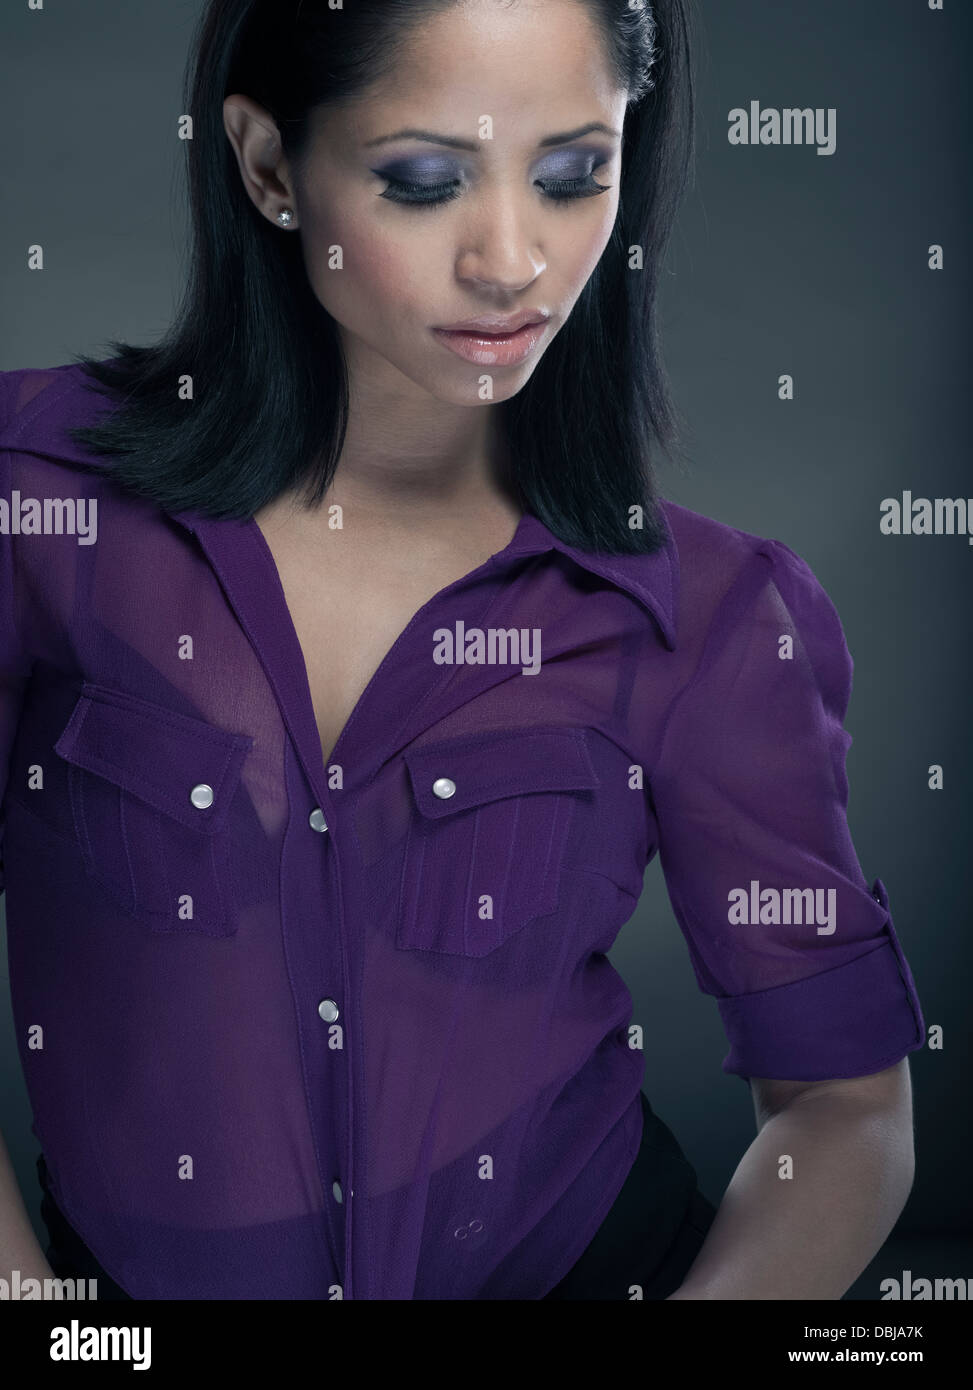 Philippinischen jungen Amerikanerin lila Hemd Stockfoto